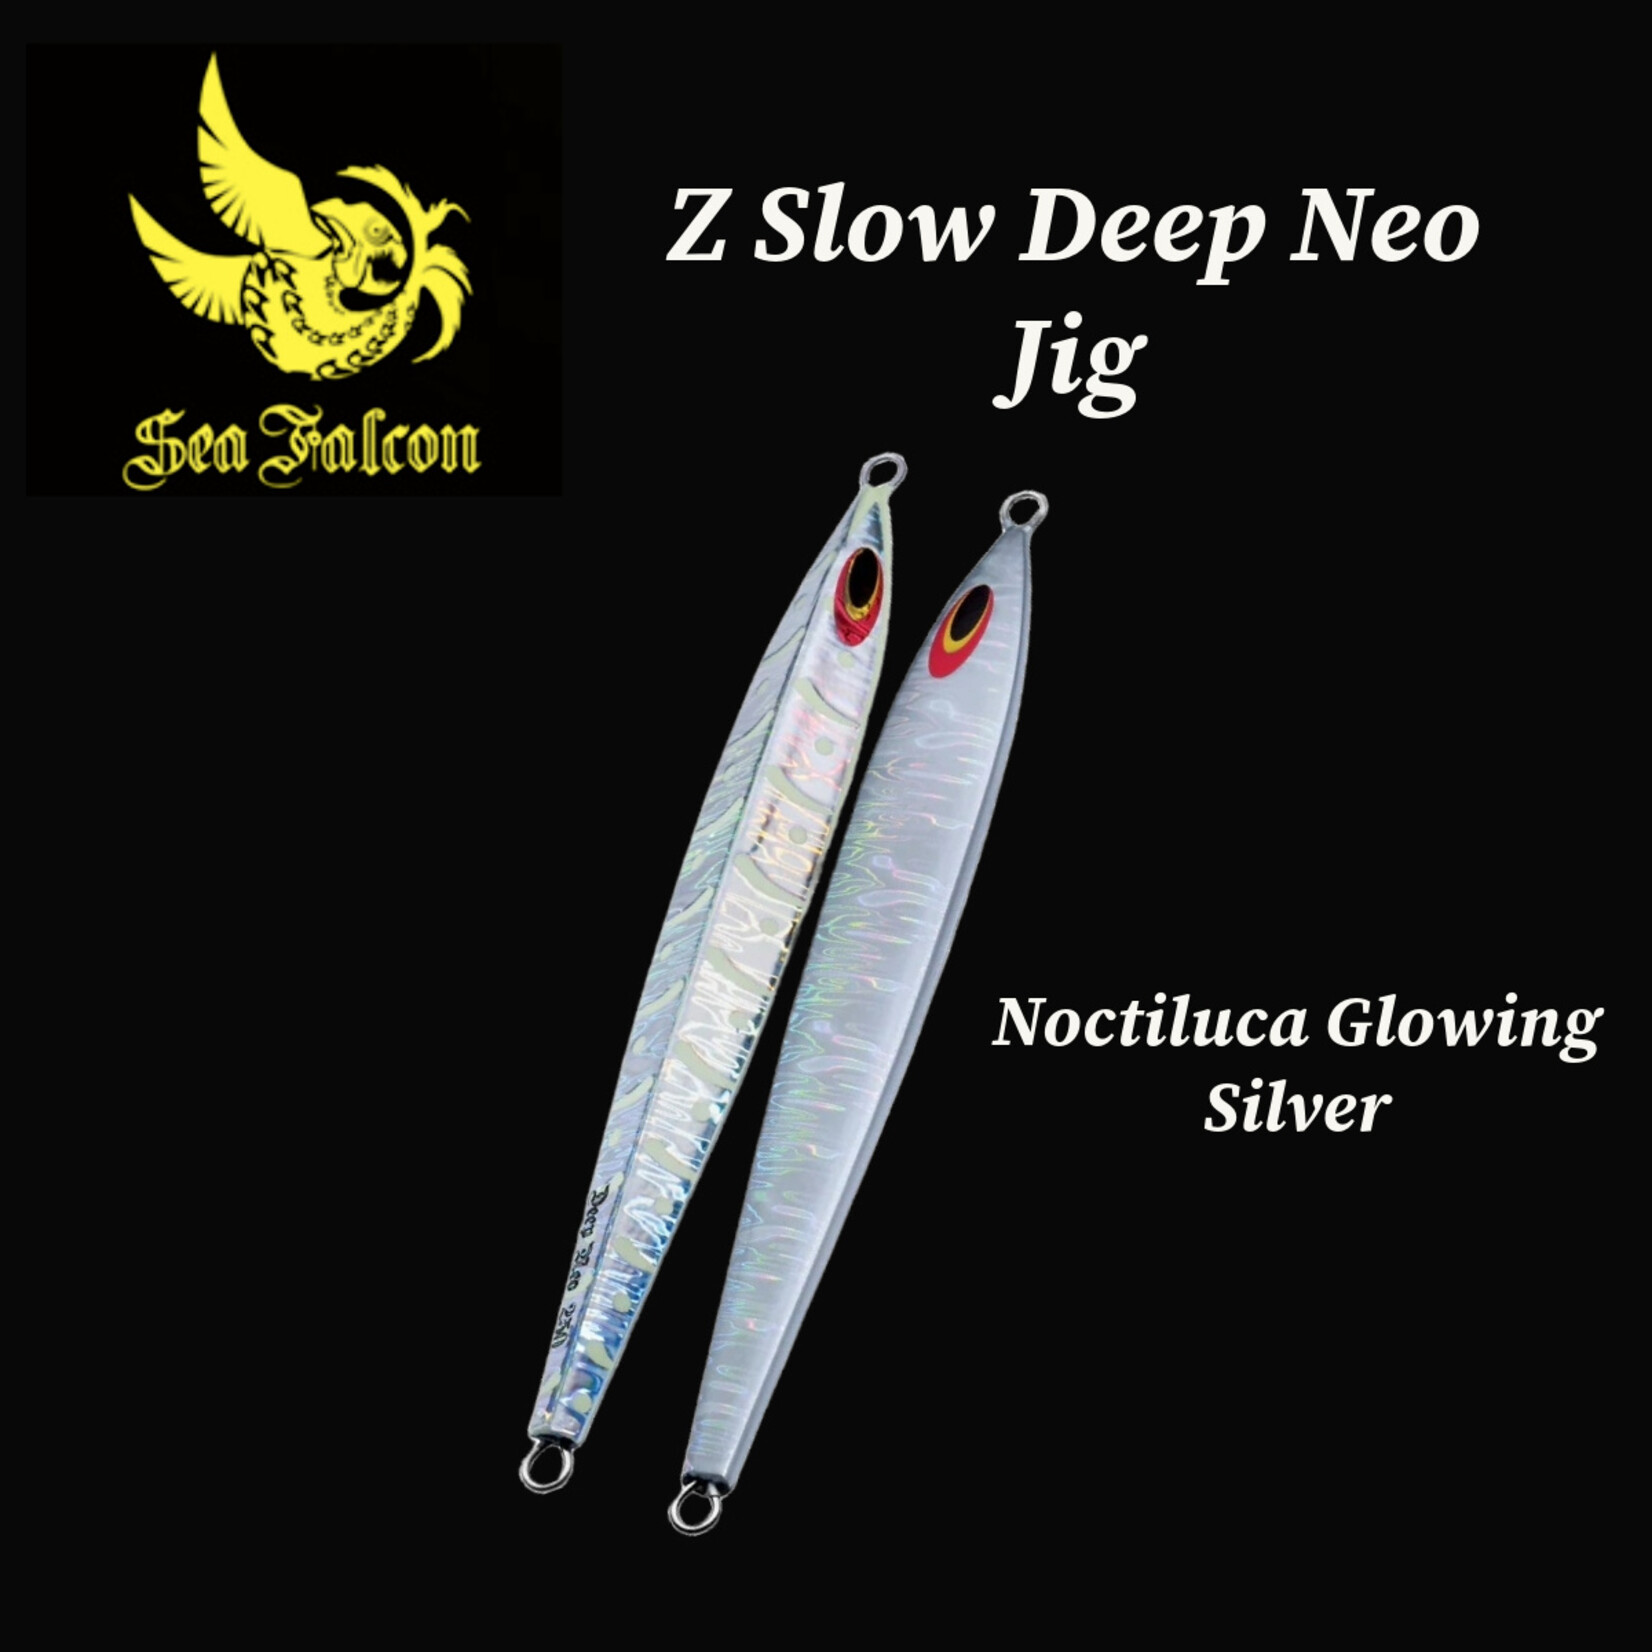 Sea Falcon Z Slow Deep Neo Jig